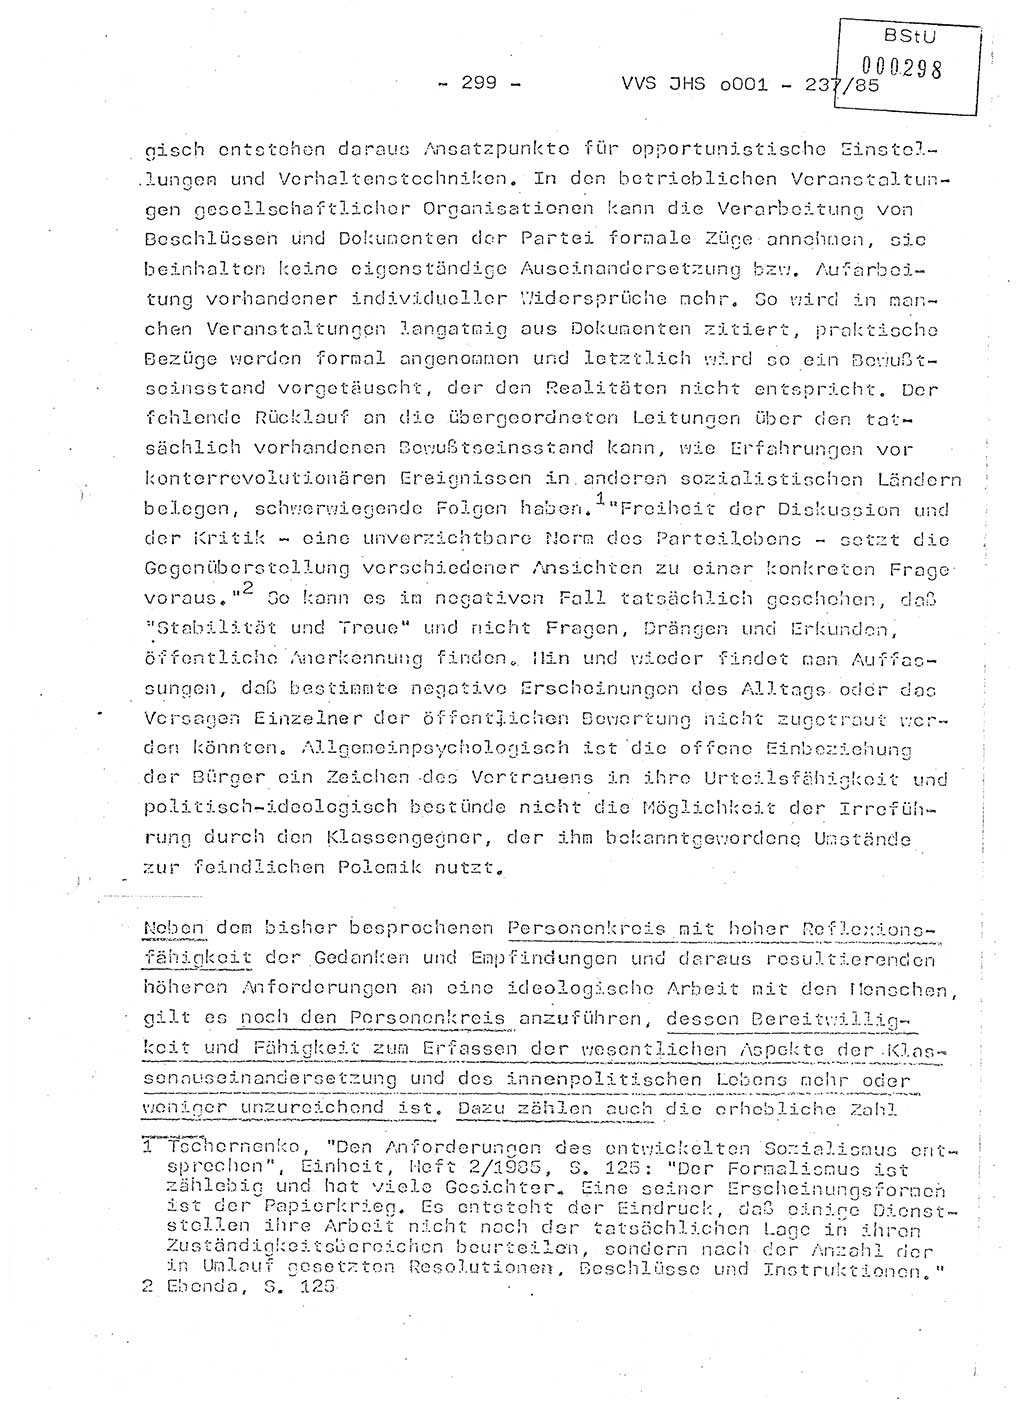 Dissertation Oberstleutnant Peter Jakulski (JHS), Oberstleutnat Christian Rudolph (HA Ⅸ), Major Horst Böttger (ZMD), Major Wolfgang Grüneberg (JHS), Major Albert Meutsch (JHS), Ministerium für Staatssicherheit (MfS) [Deutsche Demokratische Republik (DDR)], Juristische Hochschule (JHS), Vertrauliche Verschlußsache (VVS) o001-237/85, Potsdam 1985, Seite 299 (Diss. MfS DDR JHS VVS o001-237/85 1985, S. 299)